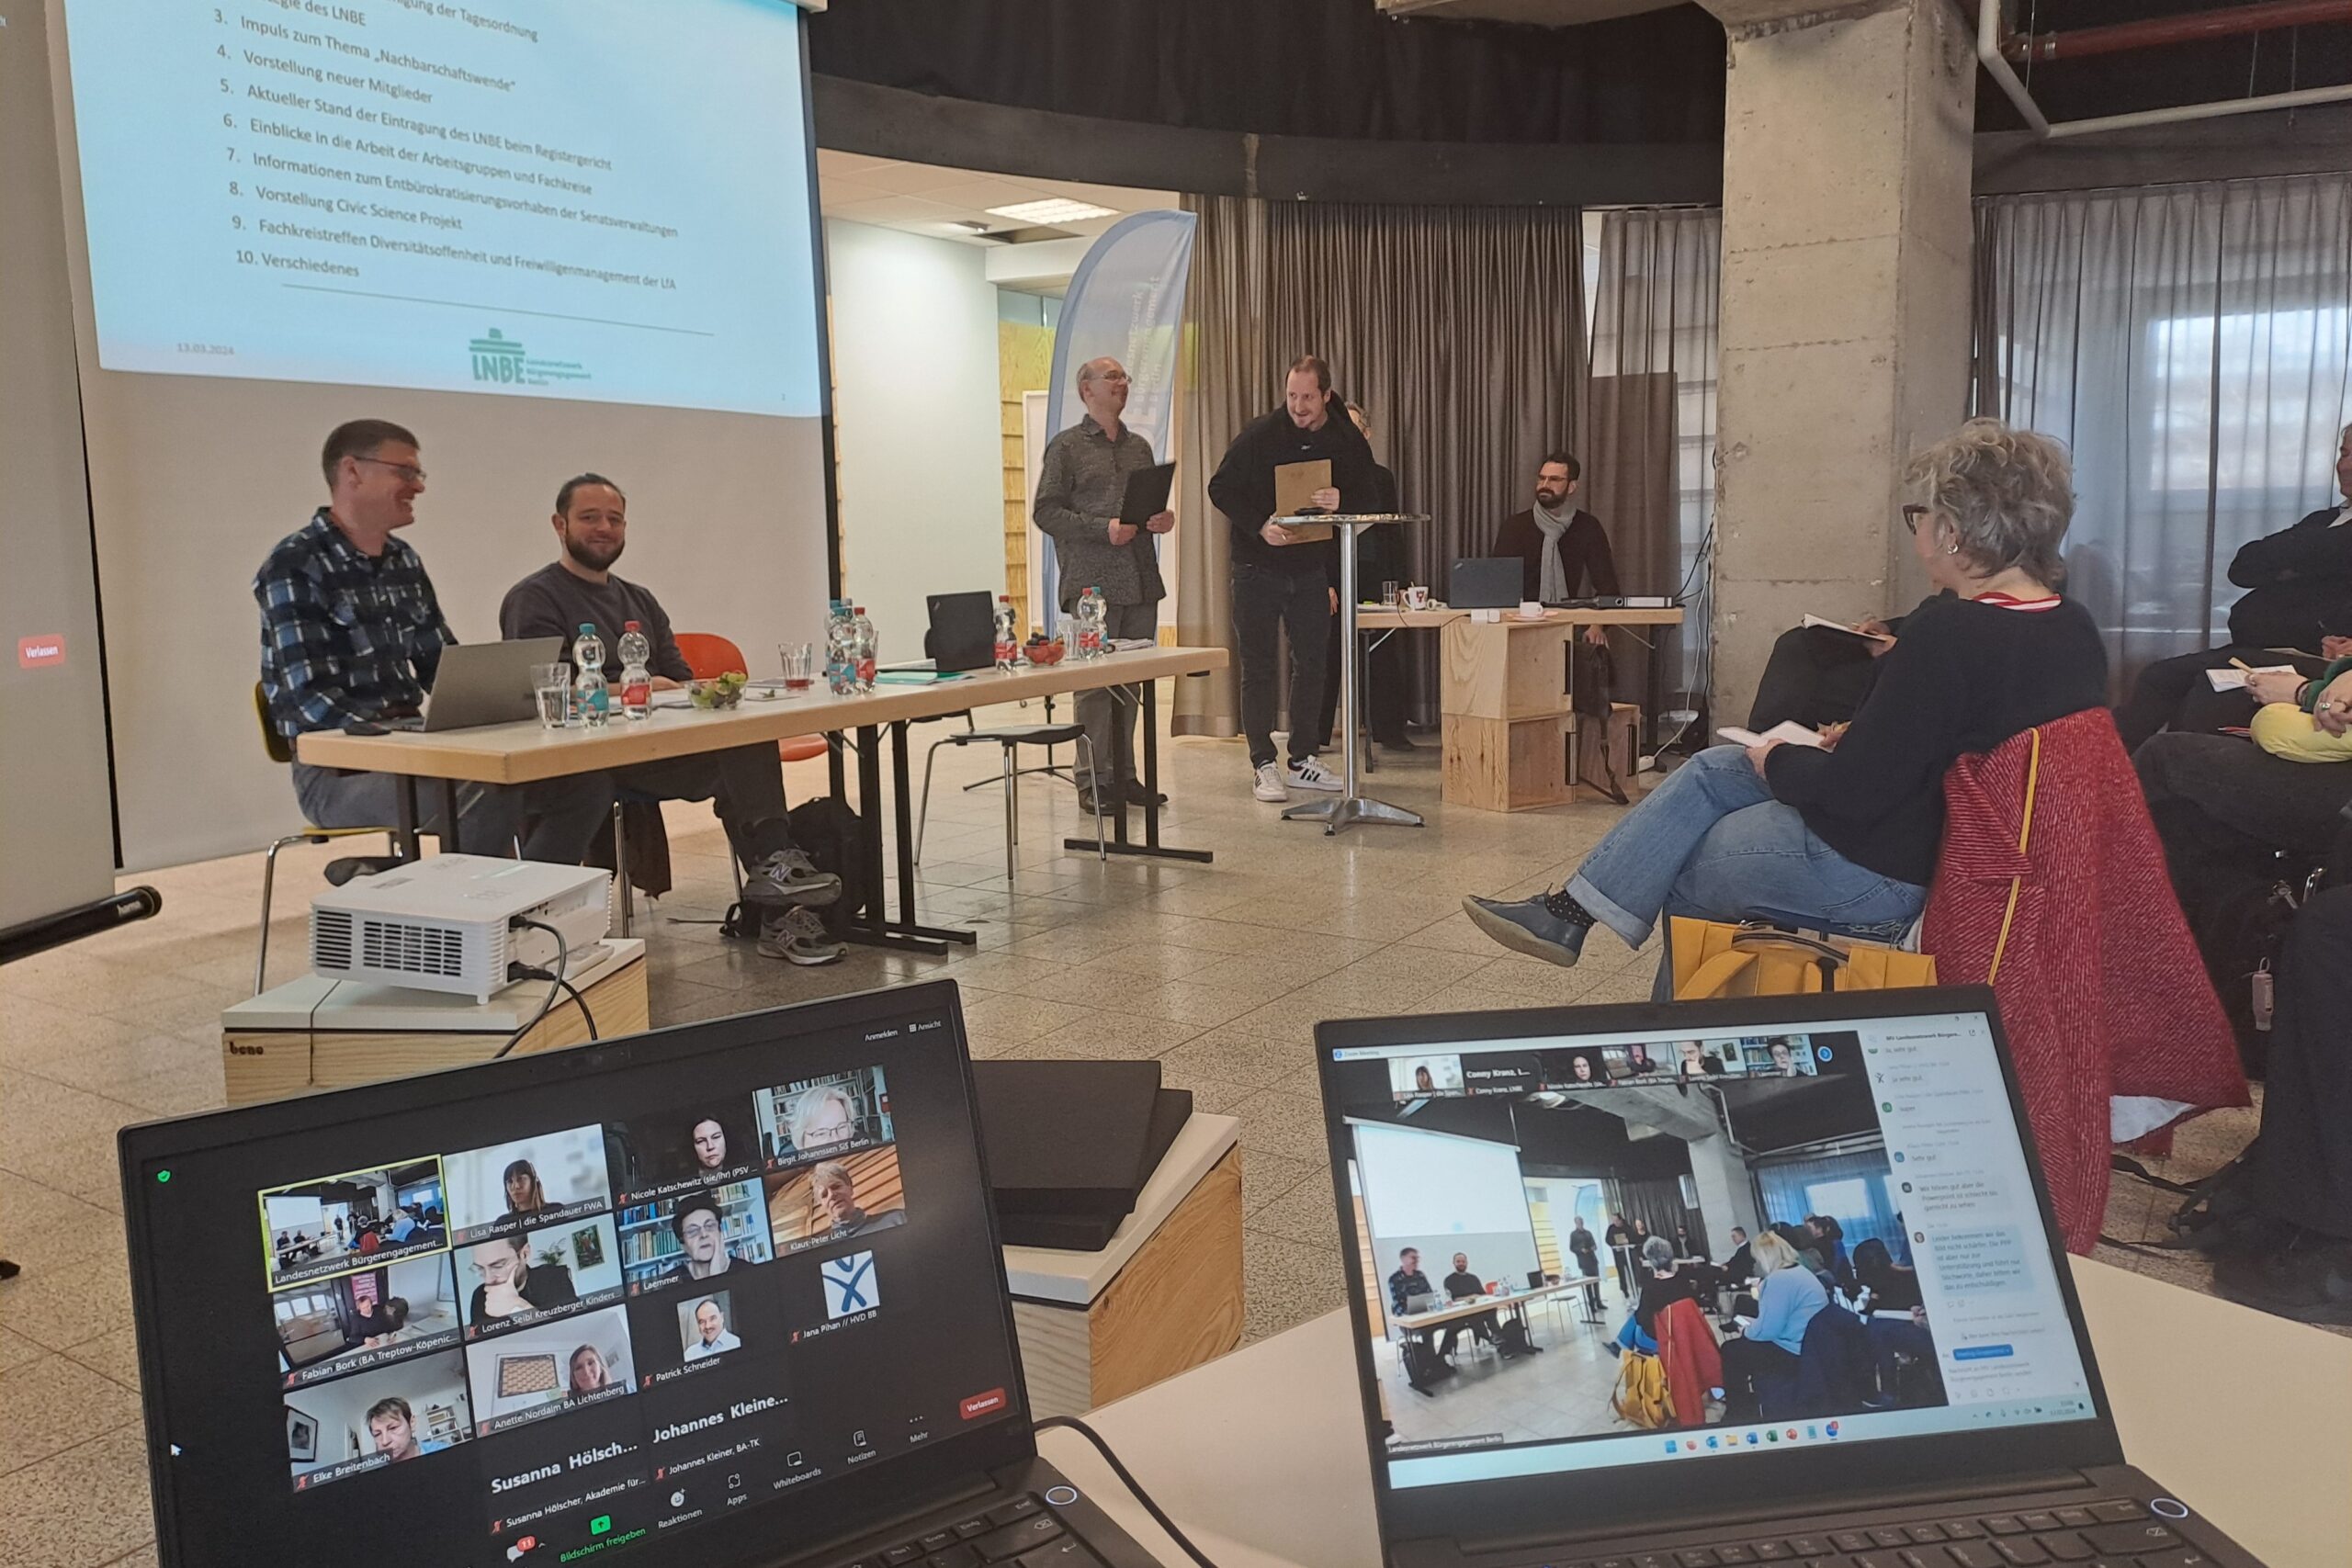 Zwei Laptops im Vordergrund zeigen die digitalen Teilnehmer der Mitgliederversammlung. Im Hintergrund ist eine Power Point Präsentation zu sehen sowie der Sprecher:innenrat.